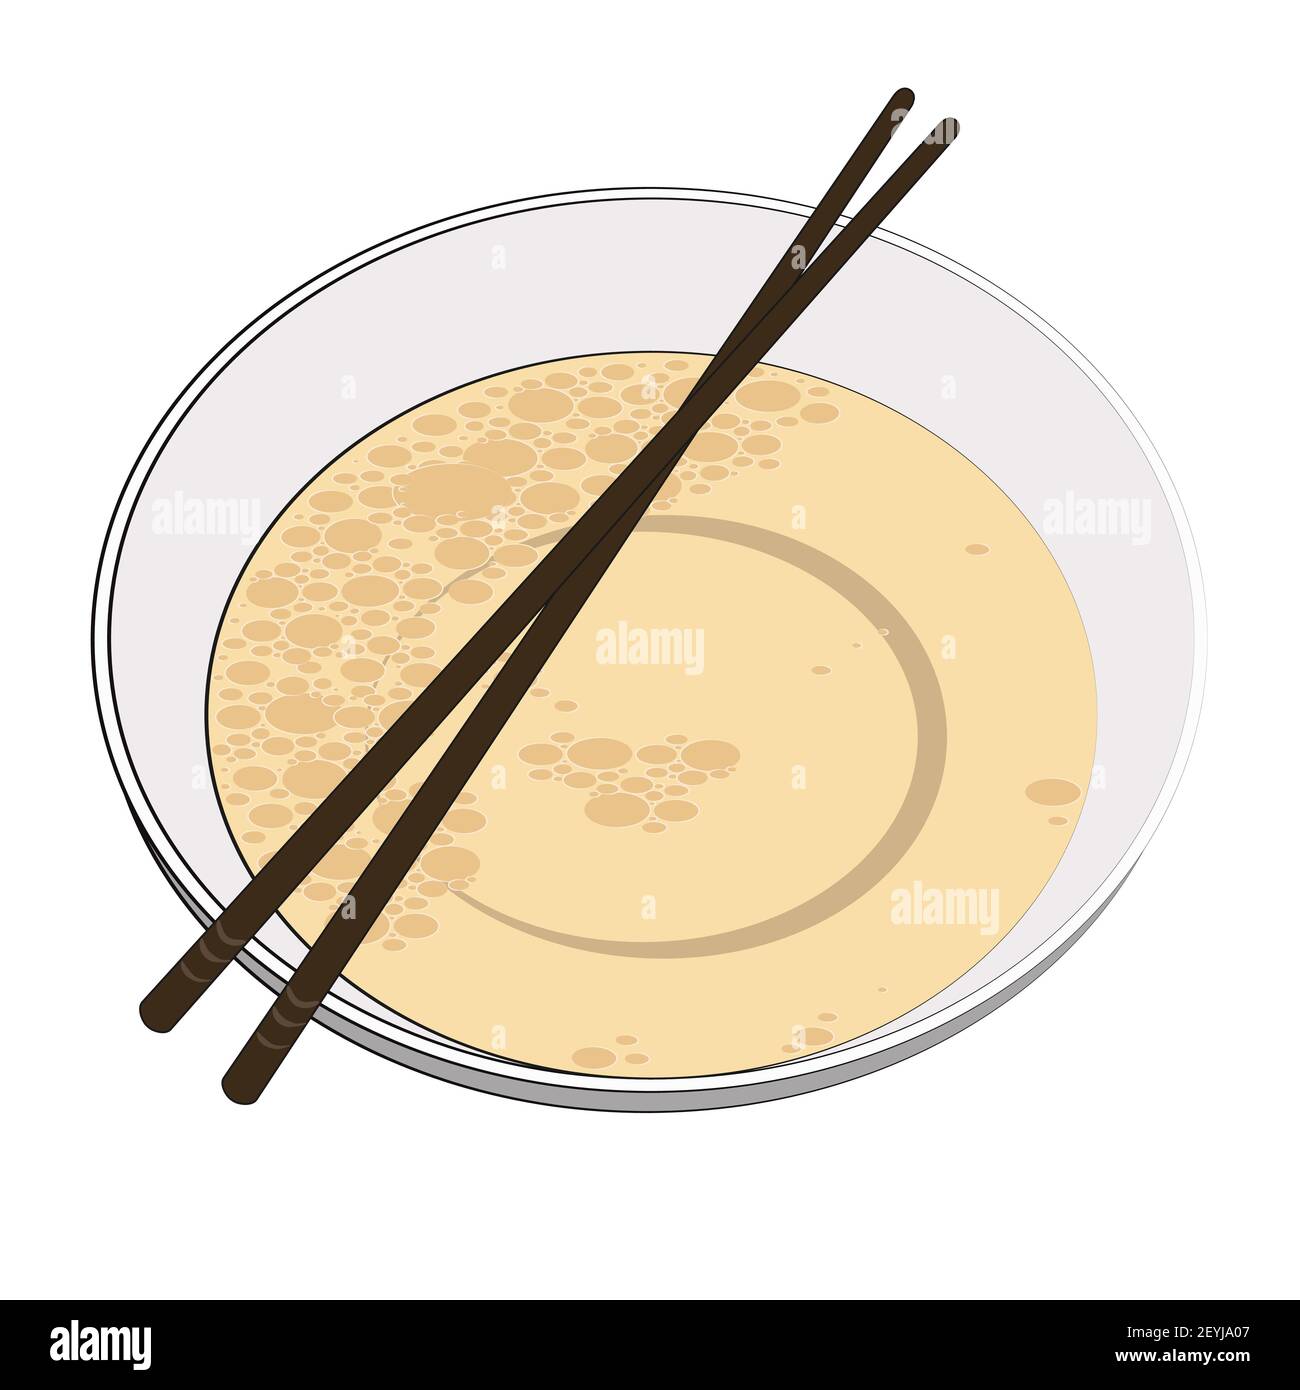 Ciotola giapponese con brodo e bastoncini di legno. Cucina tradizionale coreana o giapponese, adatta per zuppe di noodle ramen e altri piatti nazionali. Illu. Vettore Illustrazione Vettoriale